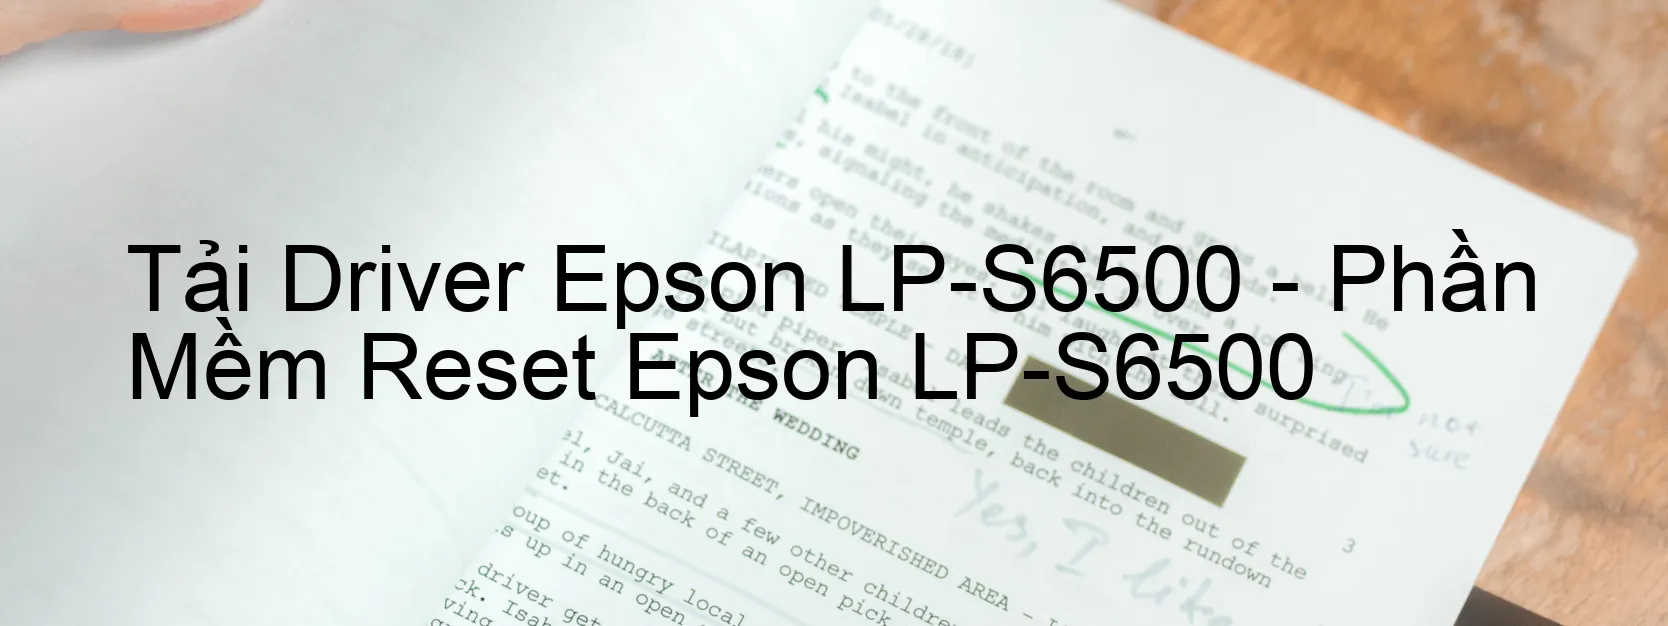 Driver Epson LP-S6500, Phần Mềm Reset Epson LP-S6500